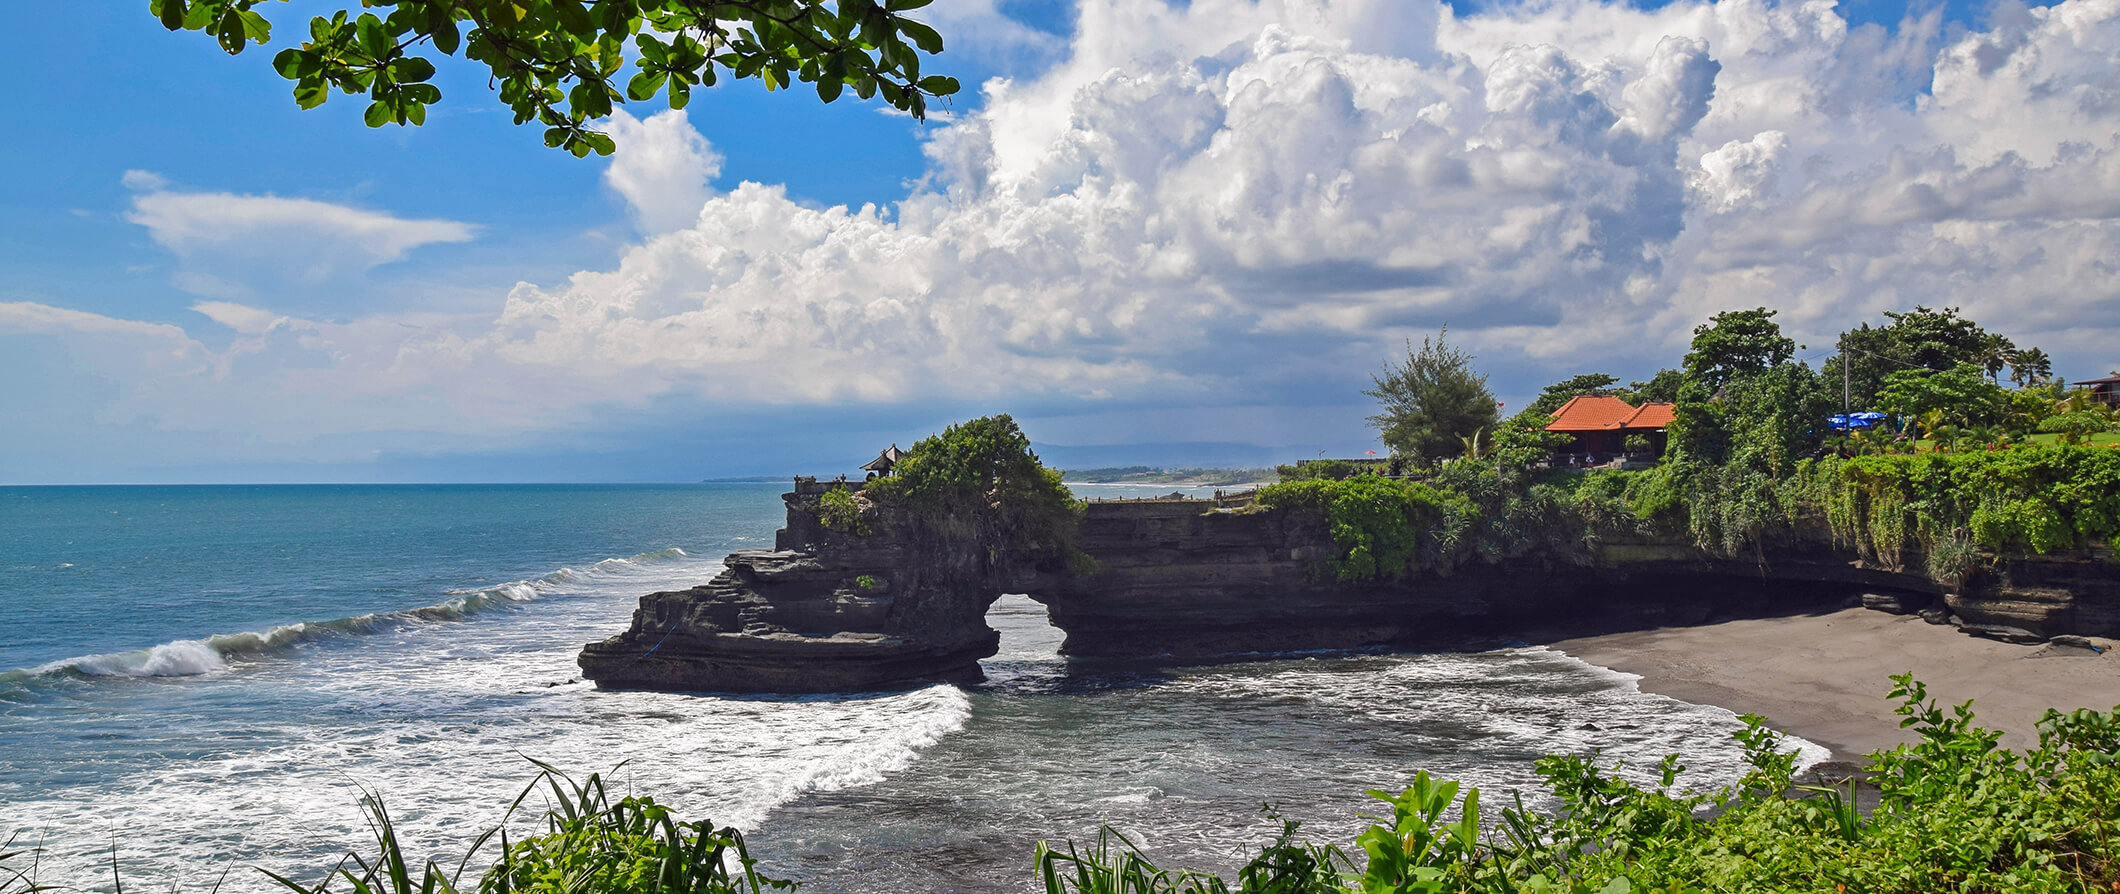 a beach in Bali